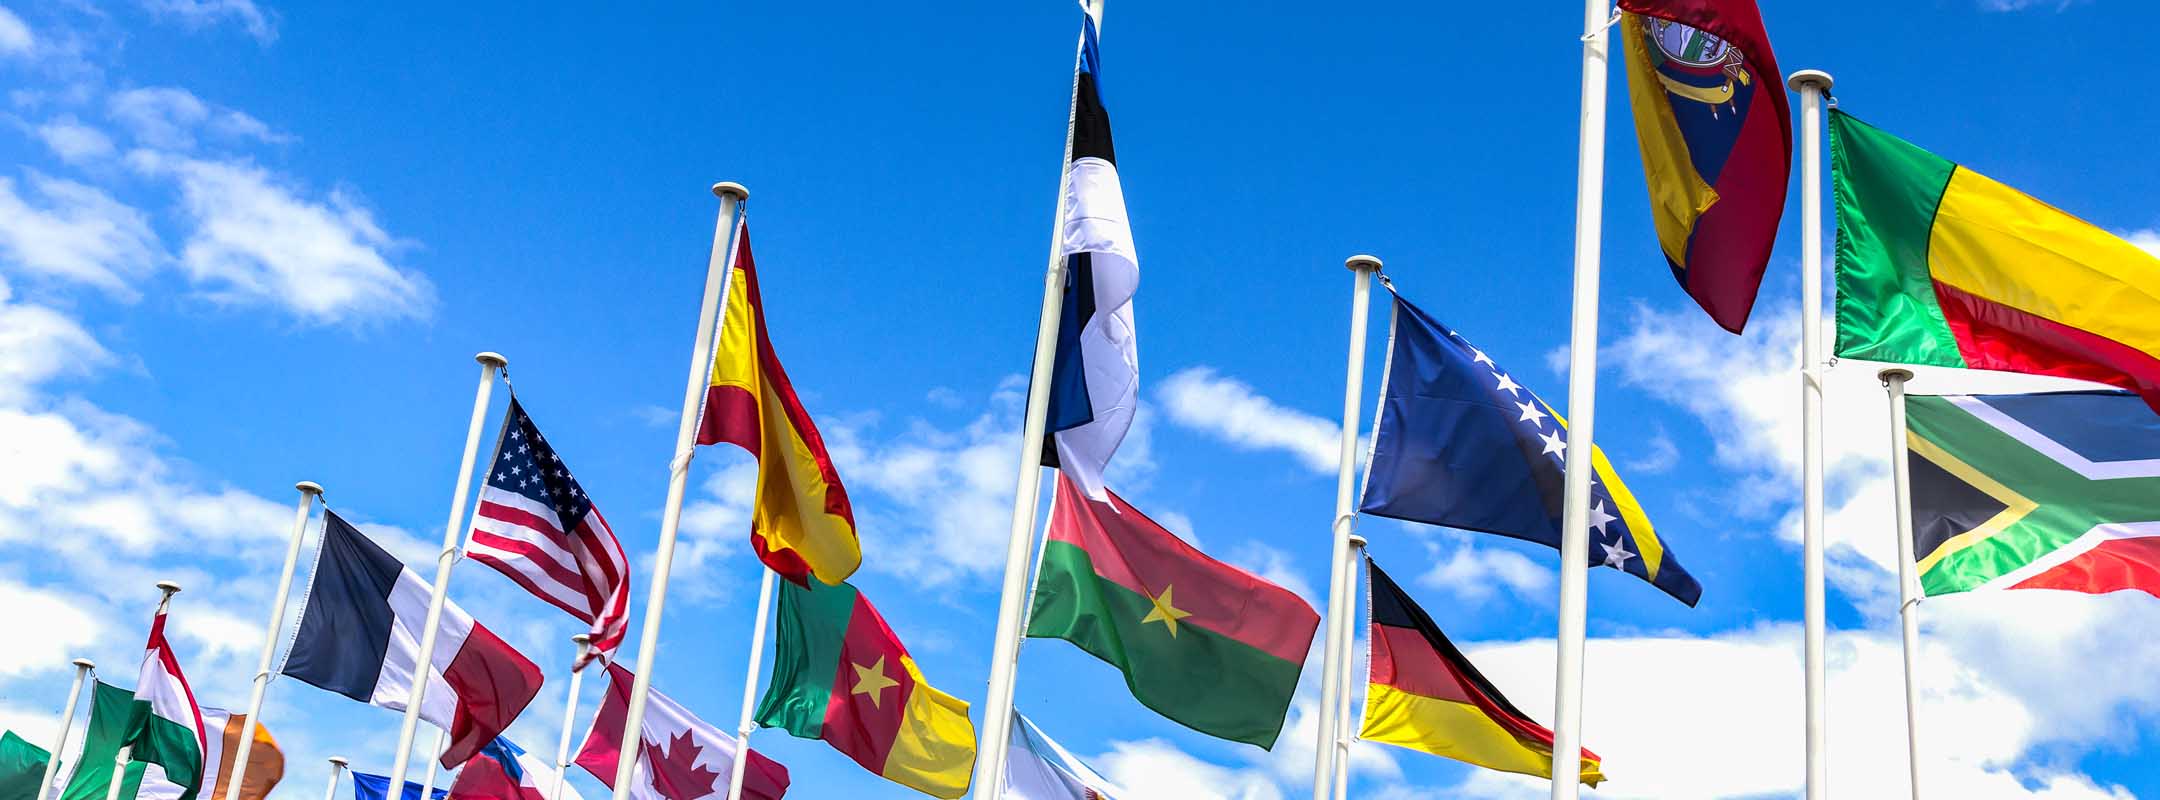 Flaggen verschiedener Nationen wehen im Wind.